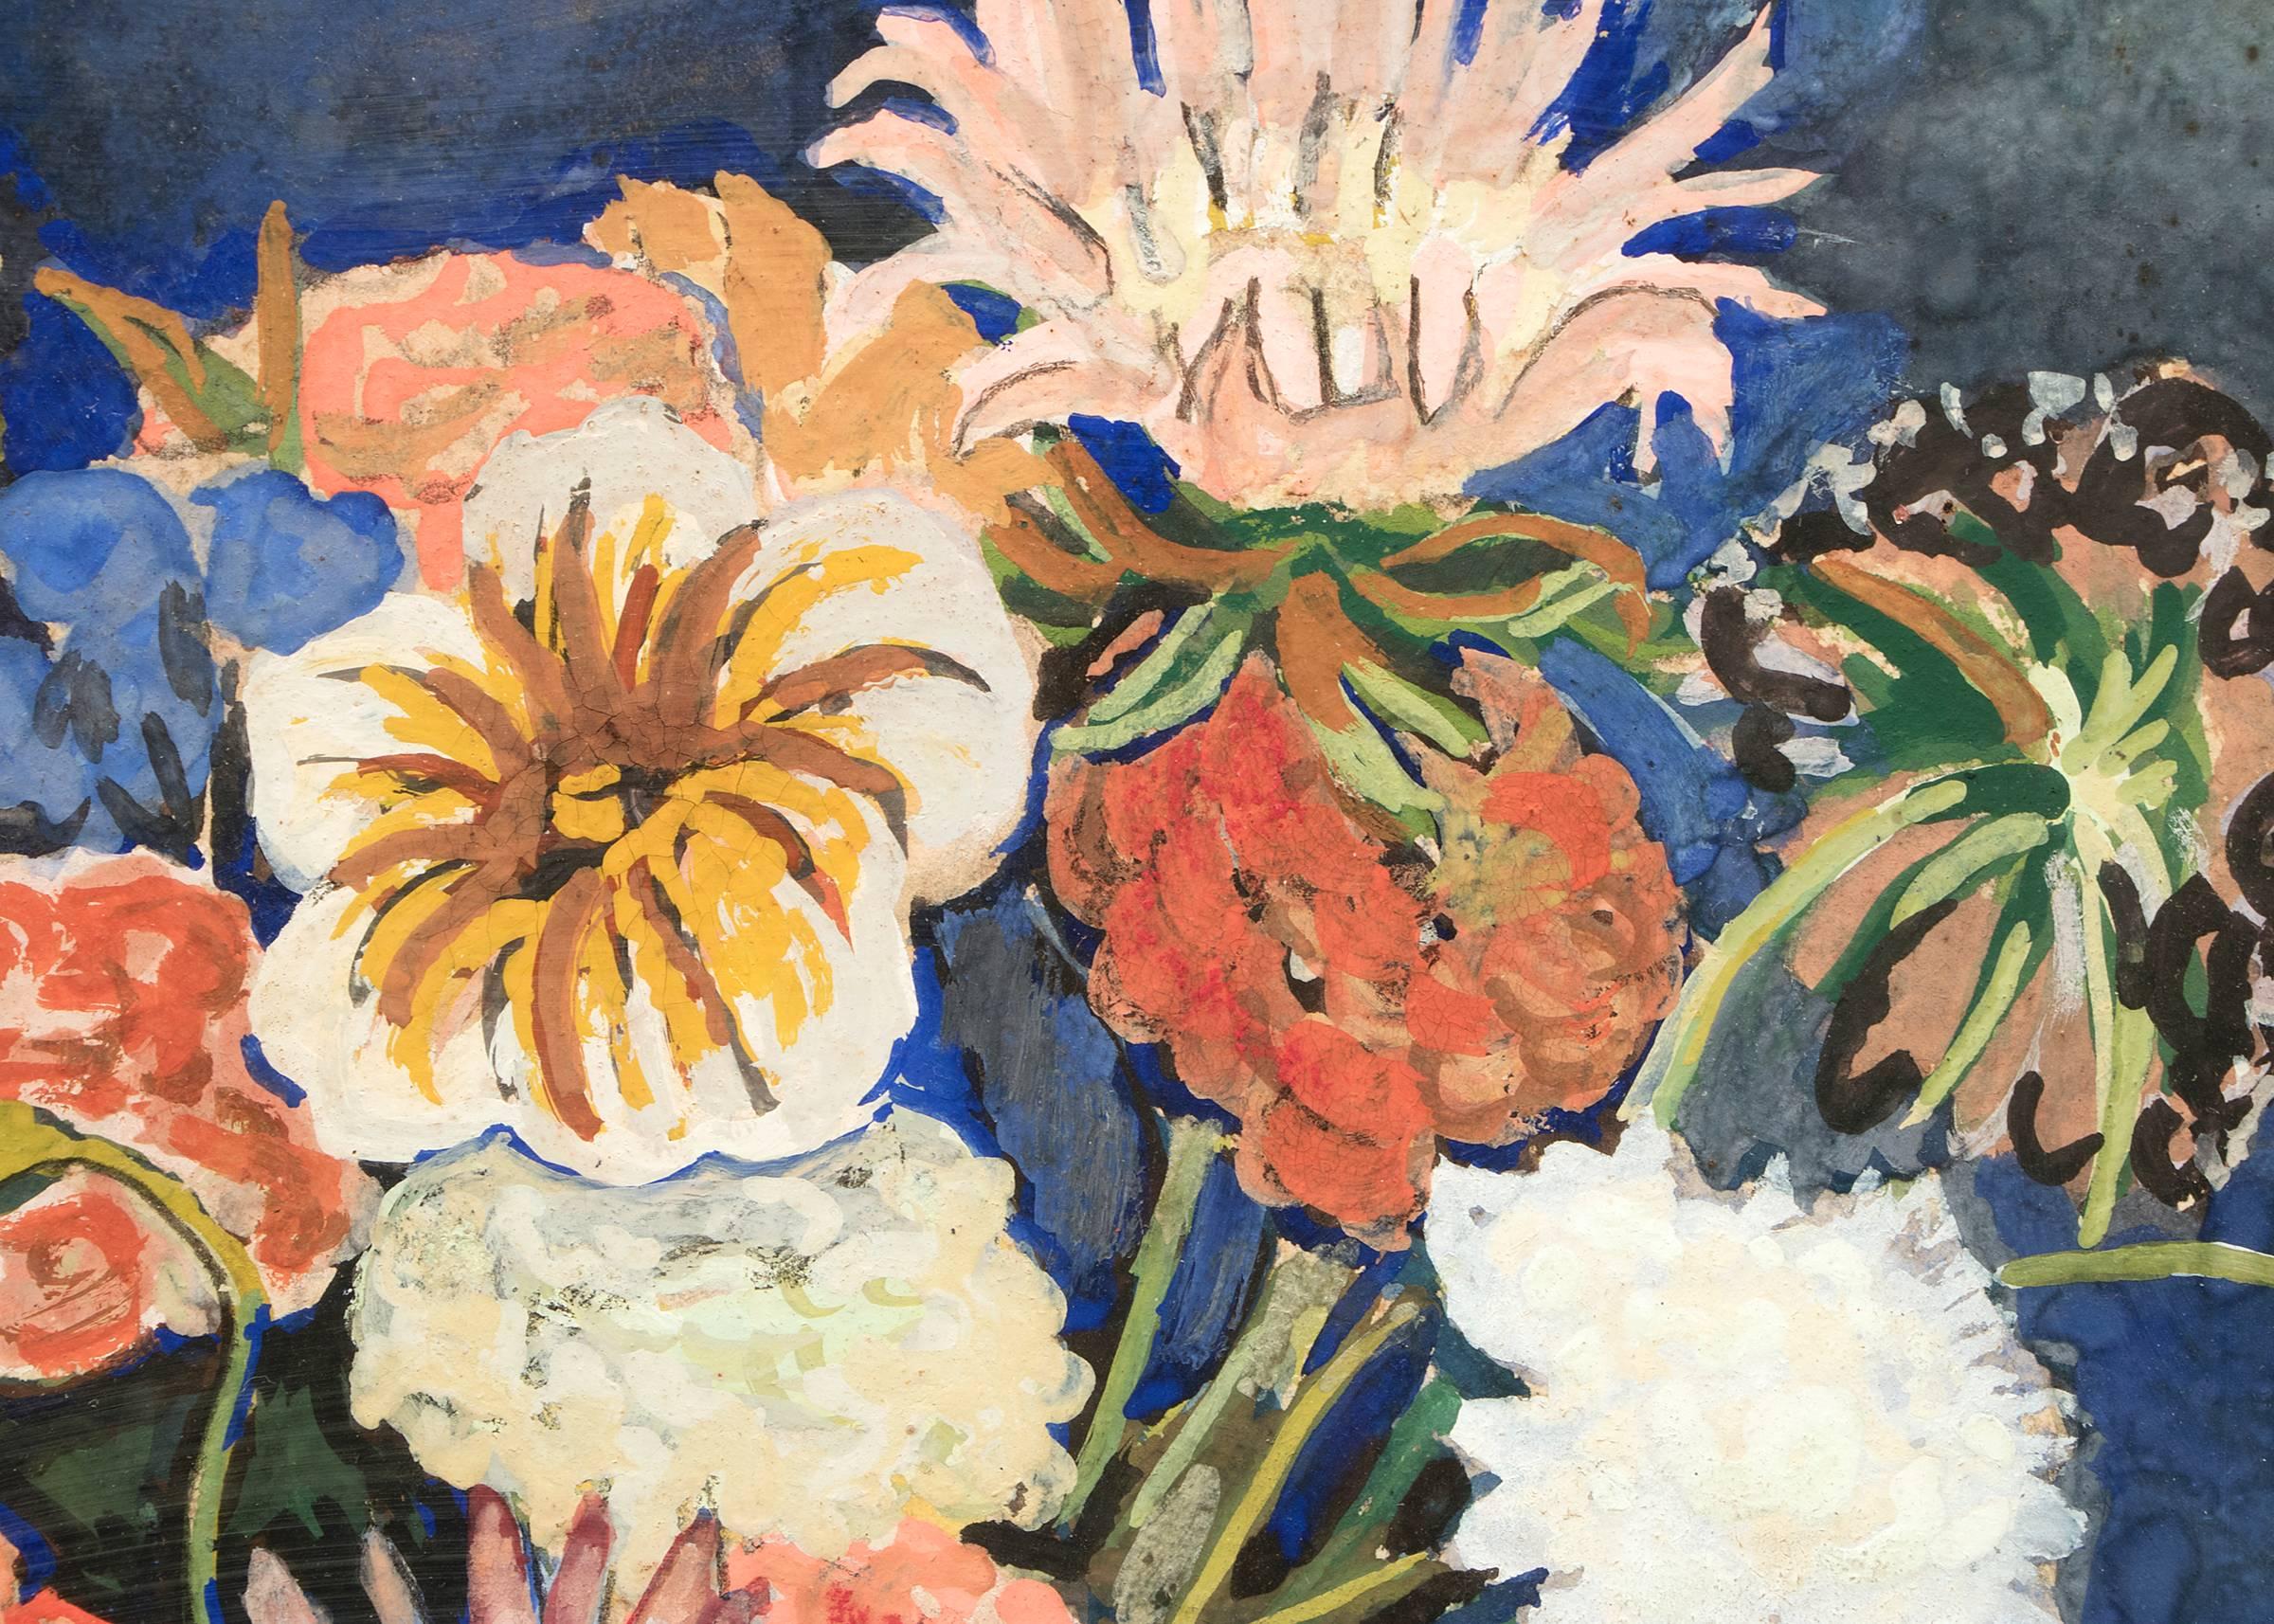 Original signiertes Stillleben um 1930 von George Macrum (1878-1970) Innenszene-Szenenstillleben mit einer Vase mit Blumen:: Blumen und Papieren auf einem Tisch. Die Außenmaße messen 23 x 19 x 1 Zoll und sind im Vintage-/Periode-Stil gehalten. Die